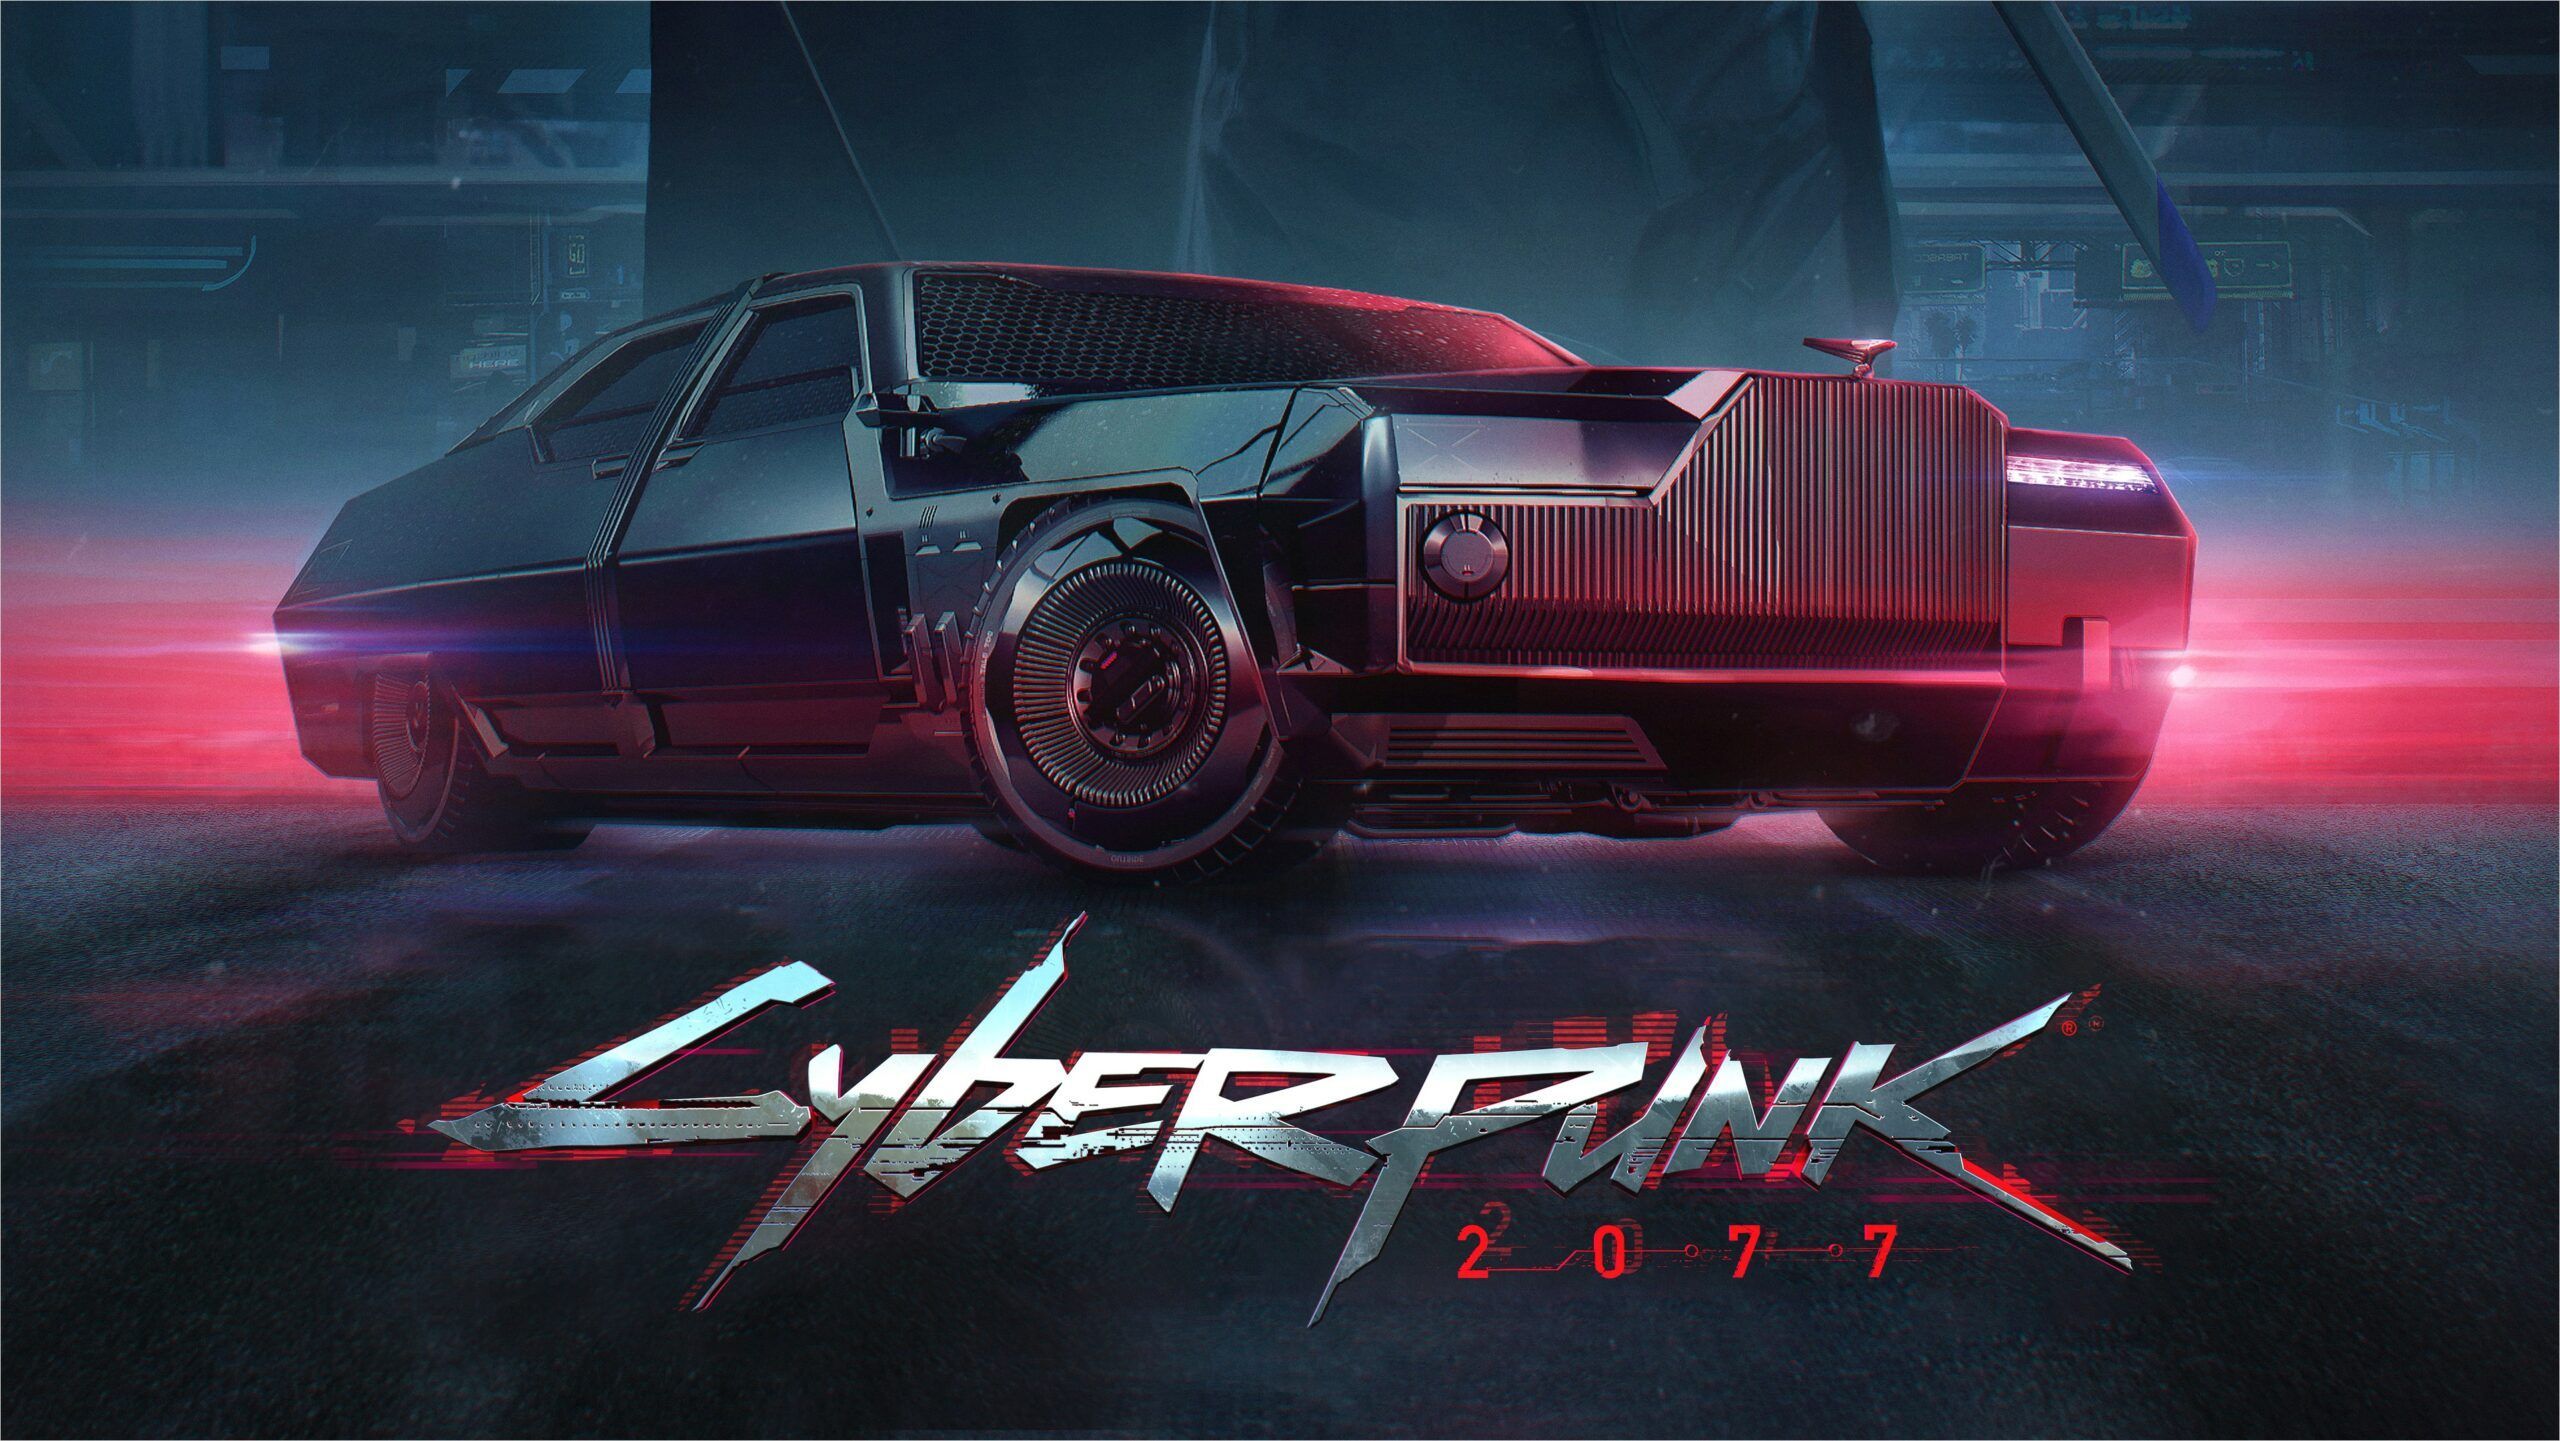 4k Cyberpunk 2077 Wallpaper. Cyberpunk Pc games wallpaper, Cyberpunk